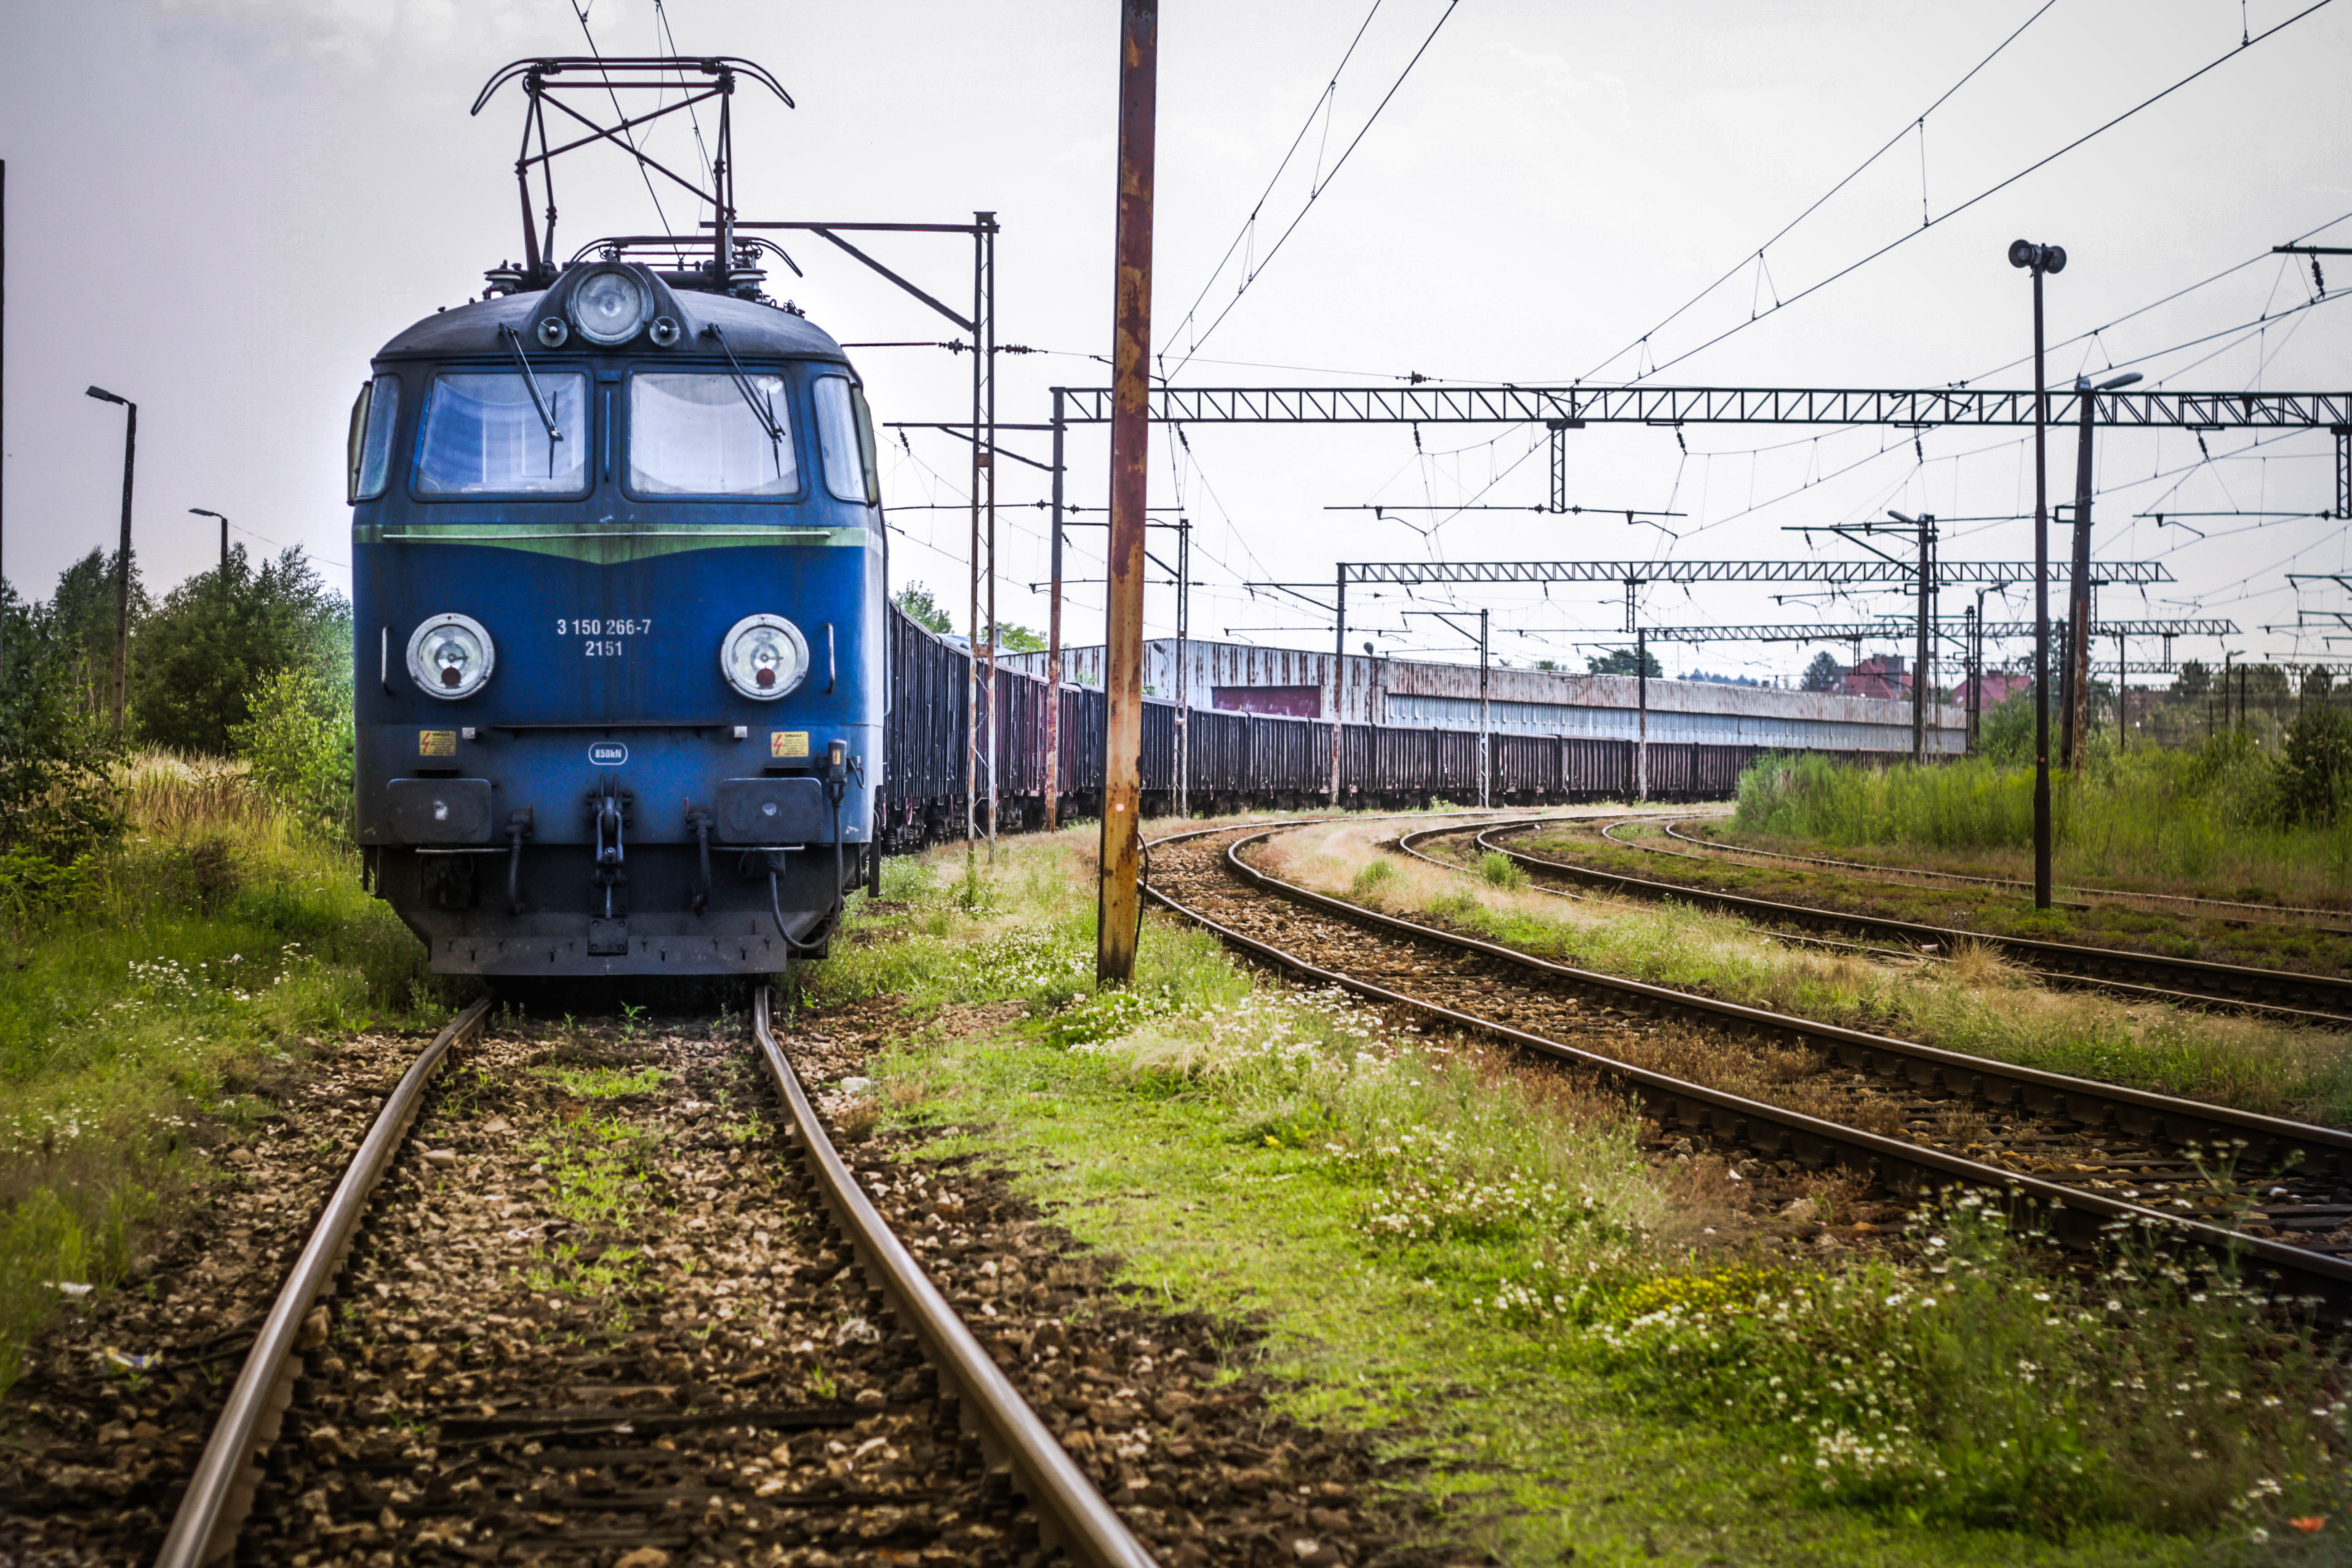 Wystąpienie FZZMK ws. zasad postępowania maszynisty obsługującego lokomotywę podczas wykonywania uproszczonej próby hamulca przy innym pociągu